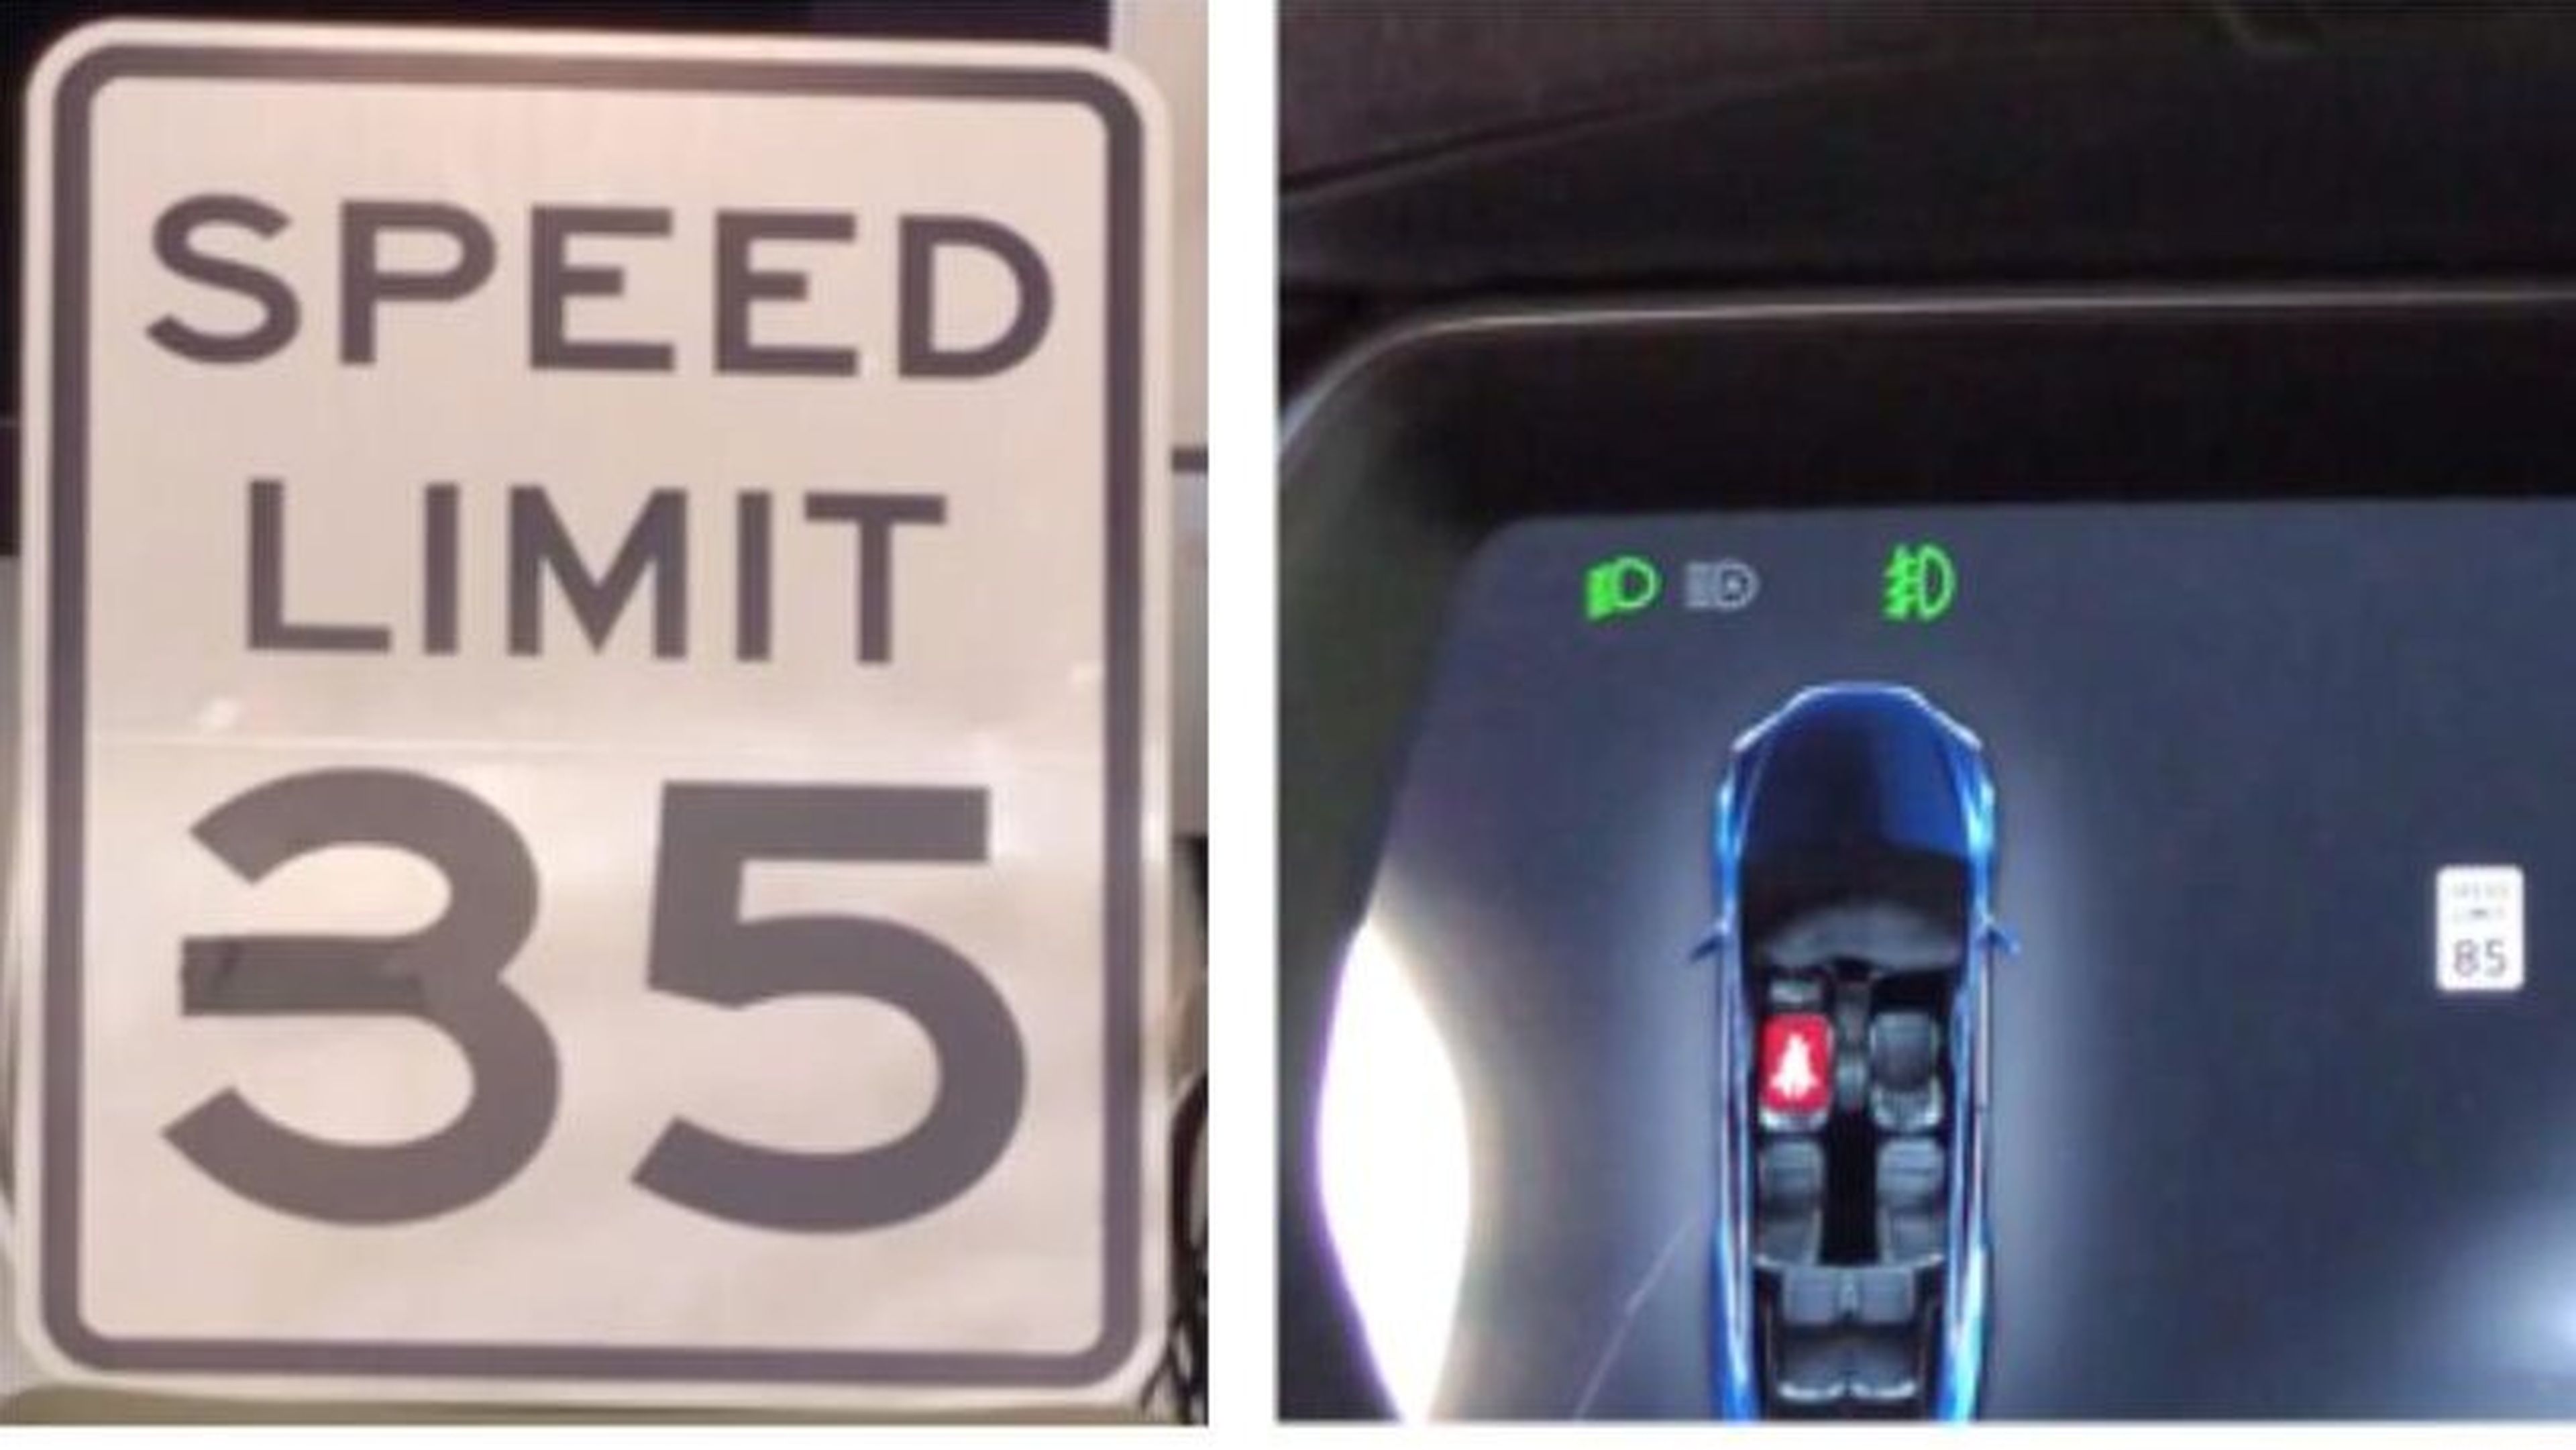 Señal de límite de velocidad modificada para la prueba.